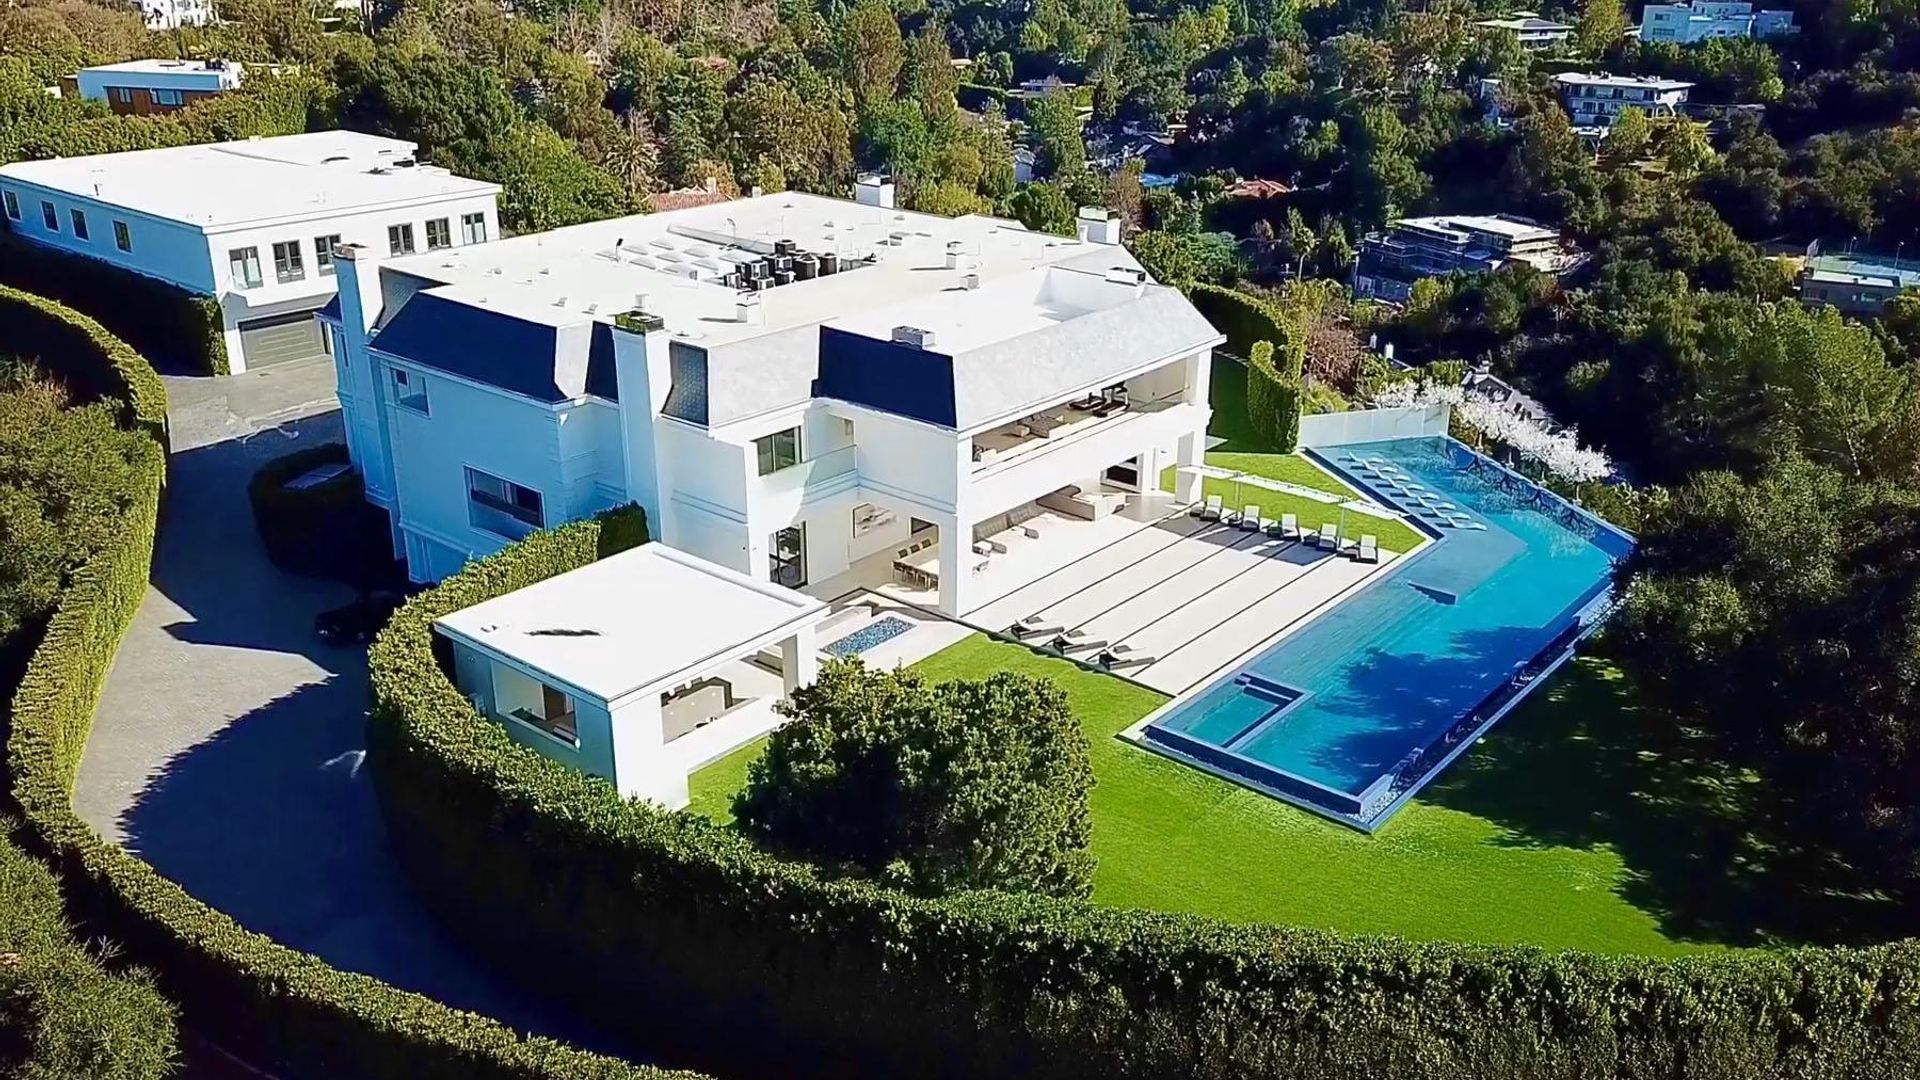 Foto a foto, la espectacular mansión que Jennifer Lopez y Ben Affleck habrían puesto a la venta